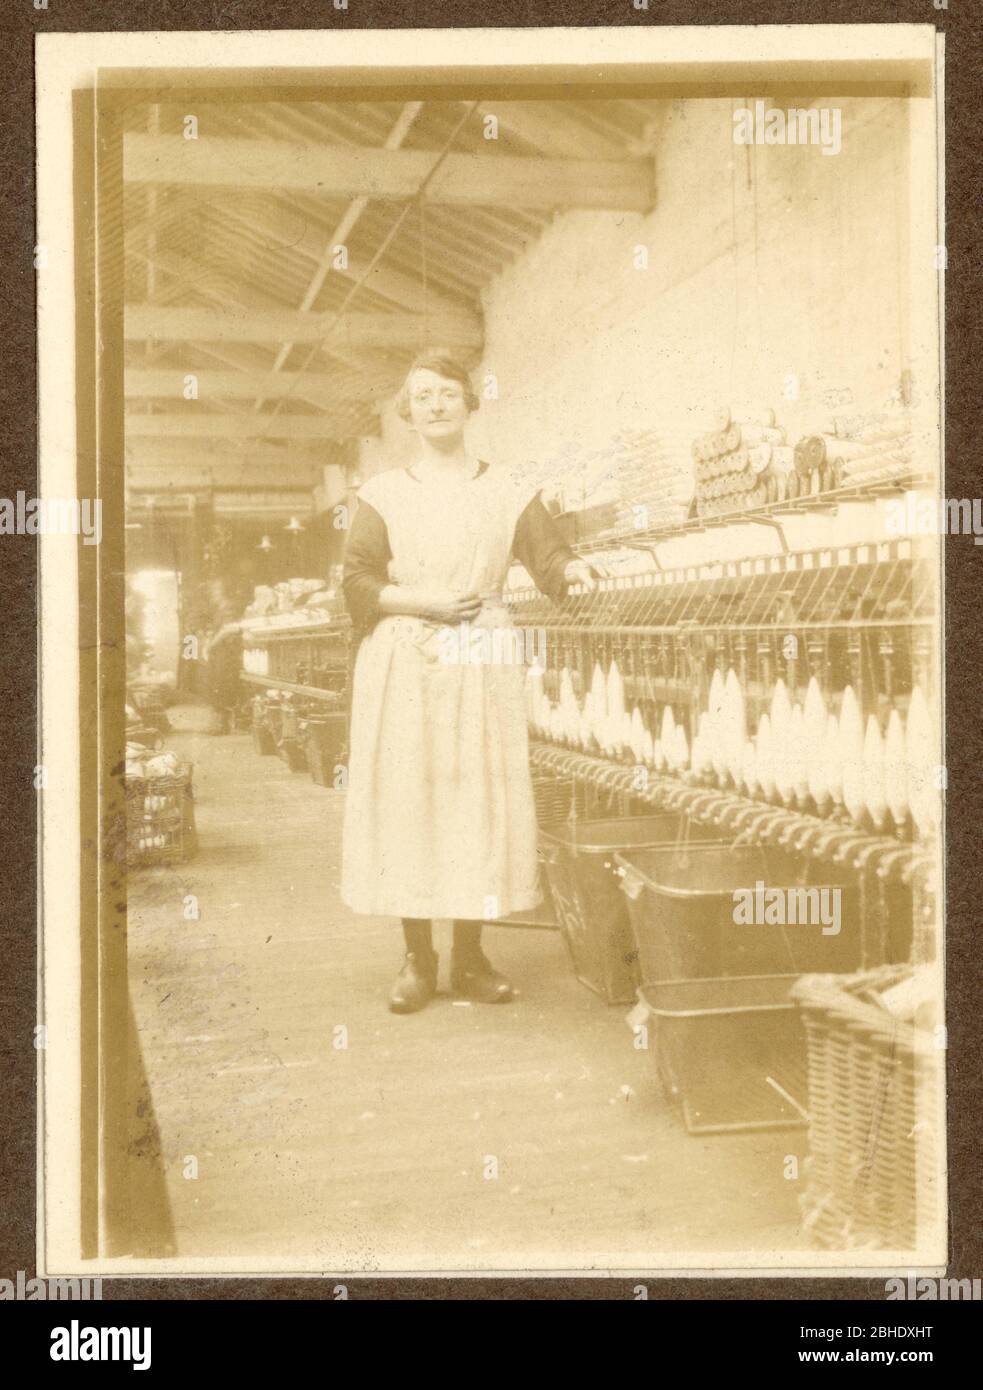 Foto des Lancashire-Baumwollspinners aus dem frühen 20. Jahrhundert, der neben einem Spinnerei in einer Baumwollfabrik steht und Clogs trägt, Radcliffe, Lancashire, Großbritannien um 1917 Stockfoto